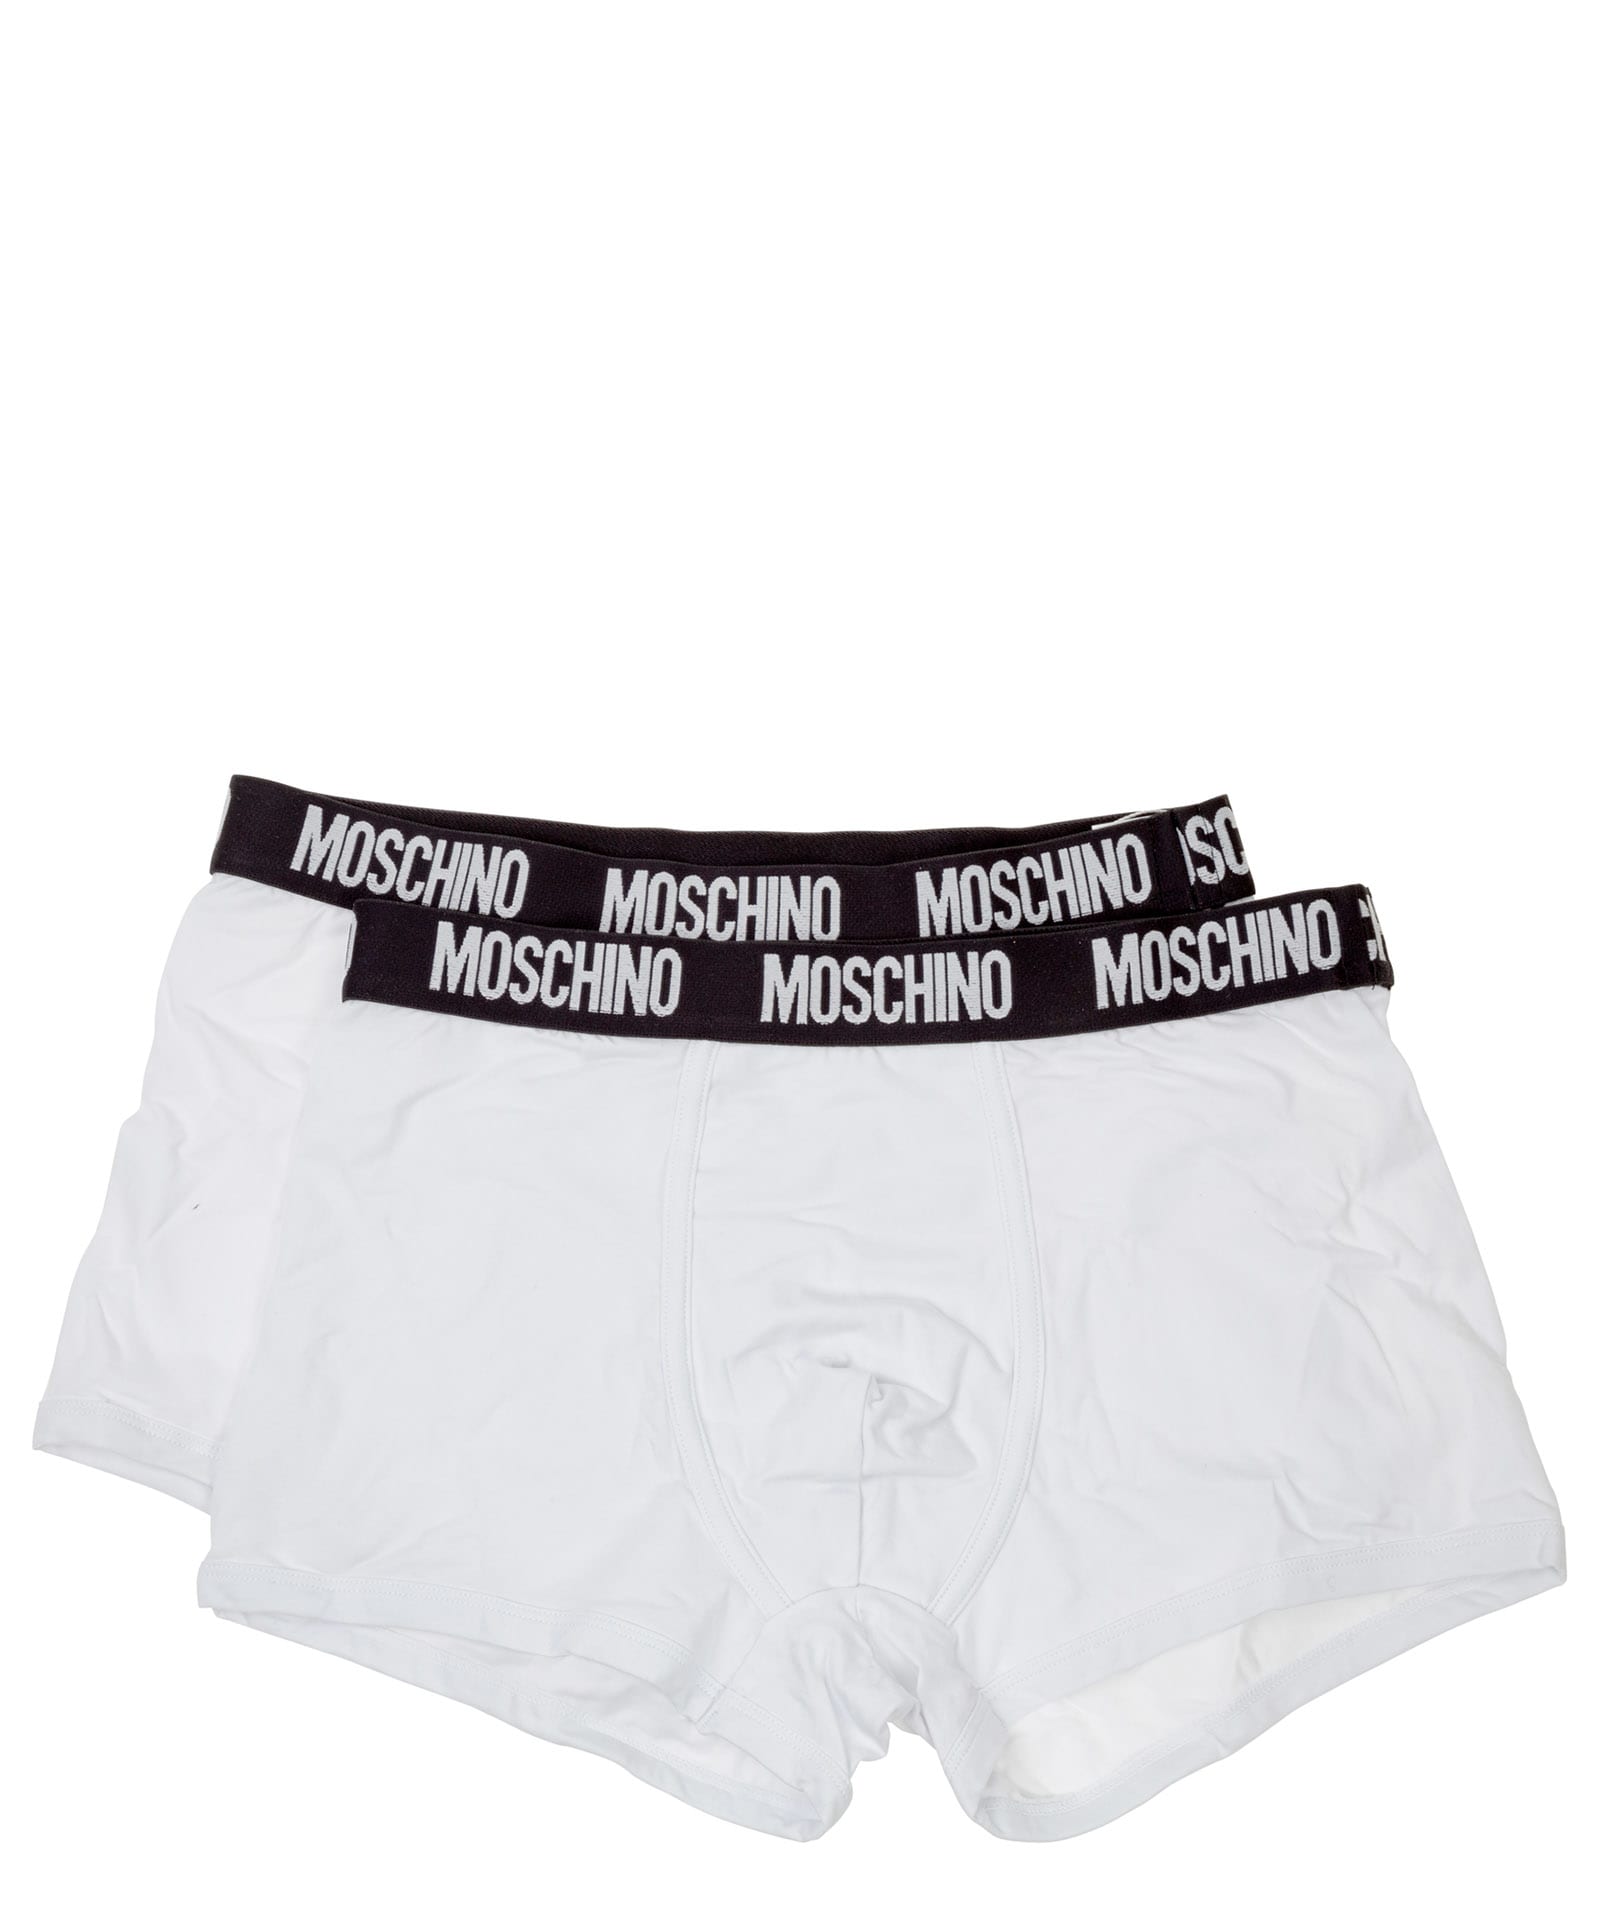 Moschino Underwear Cotton Boxer